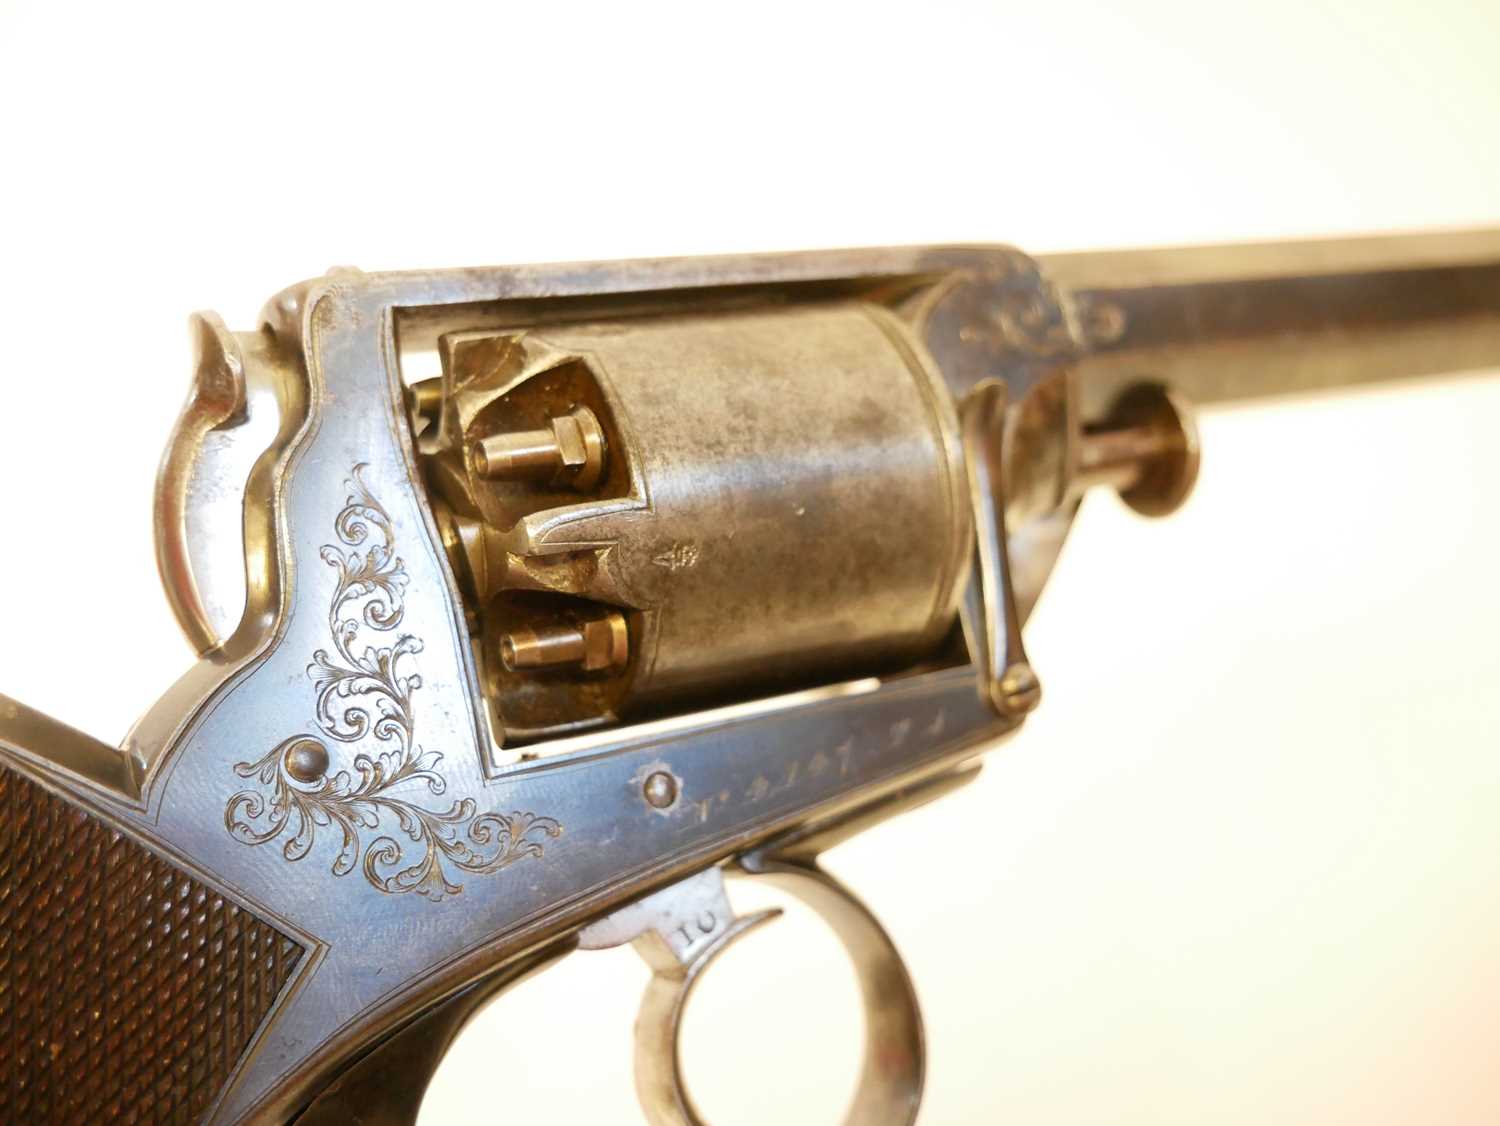 Cased 54 bore percussion revolver - Image 10 of 21